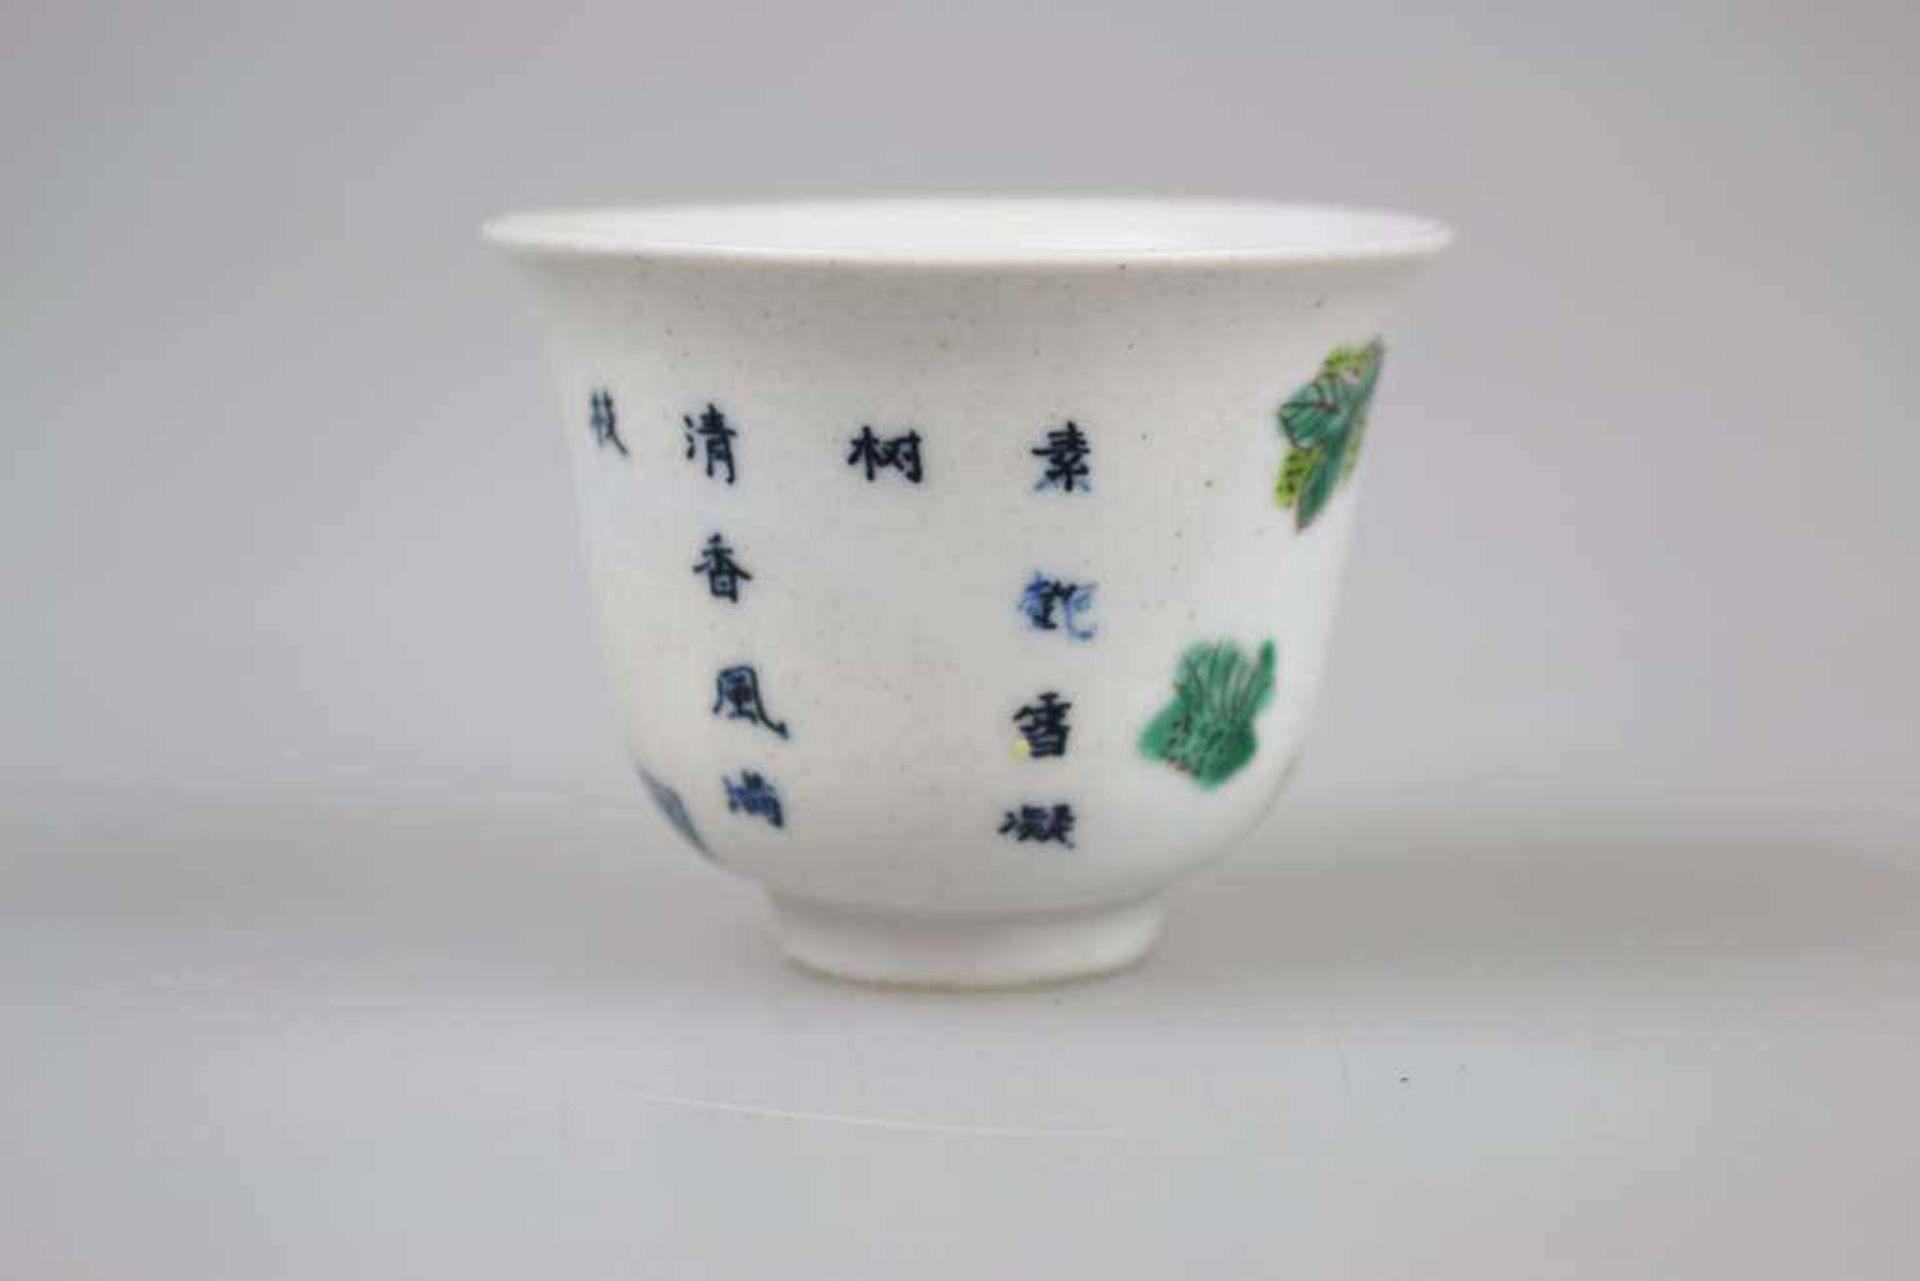 Teeschälchen, Porzellan, China um 1900, mit Pfirsichblütendekor und Gedichtzeilen, am Stand - Bild 2 aus 3